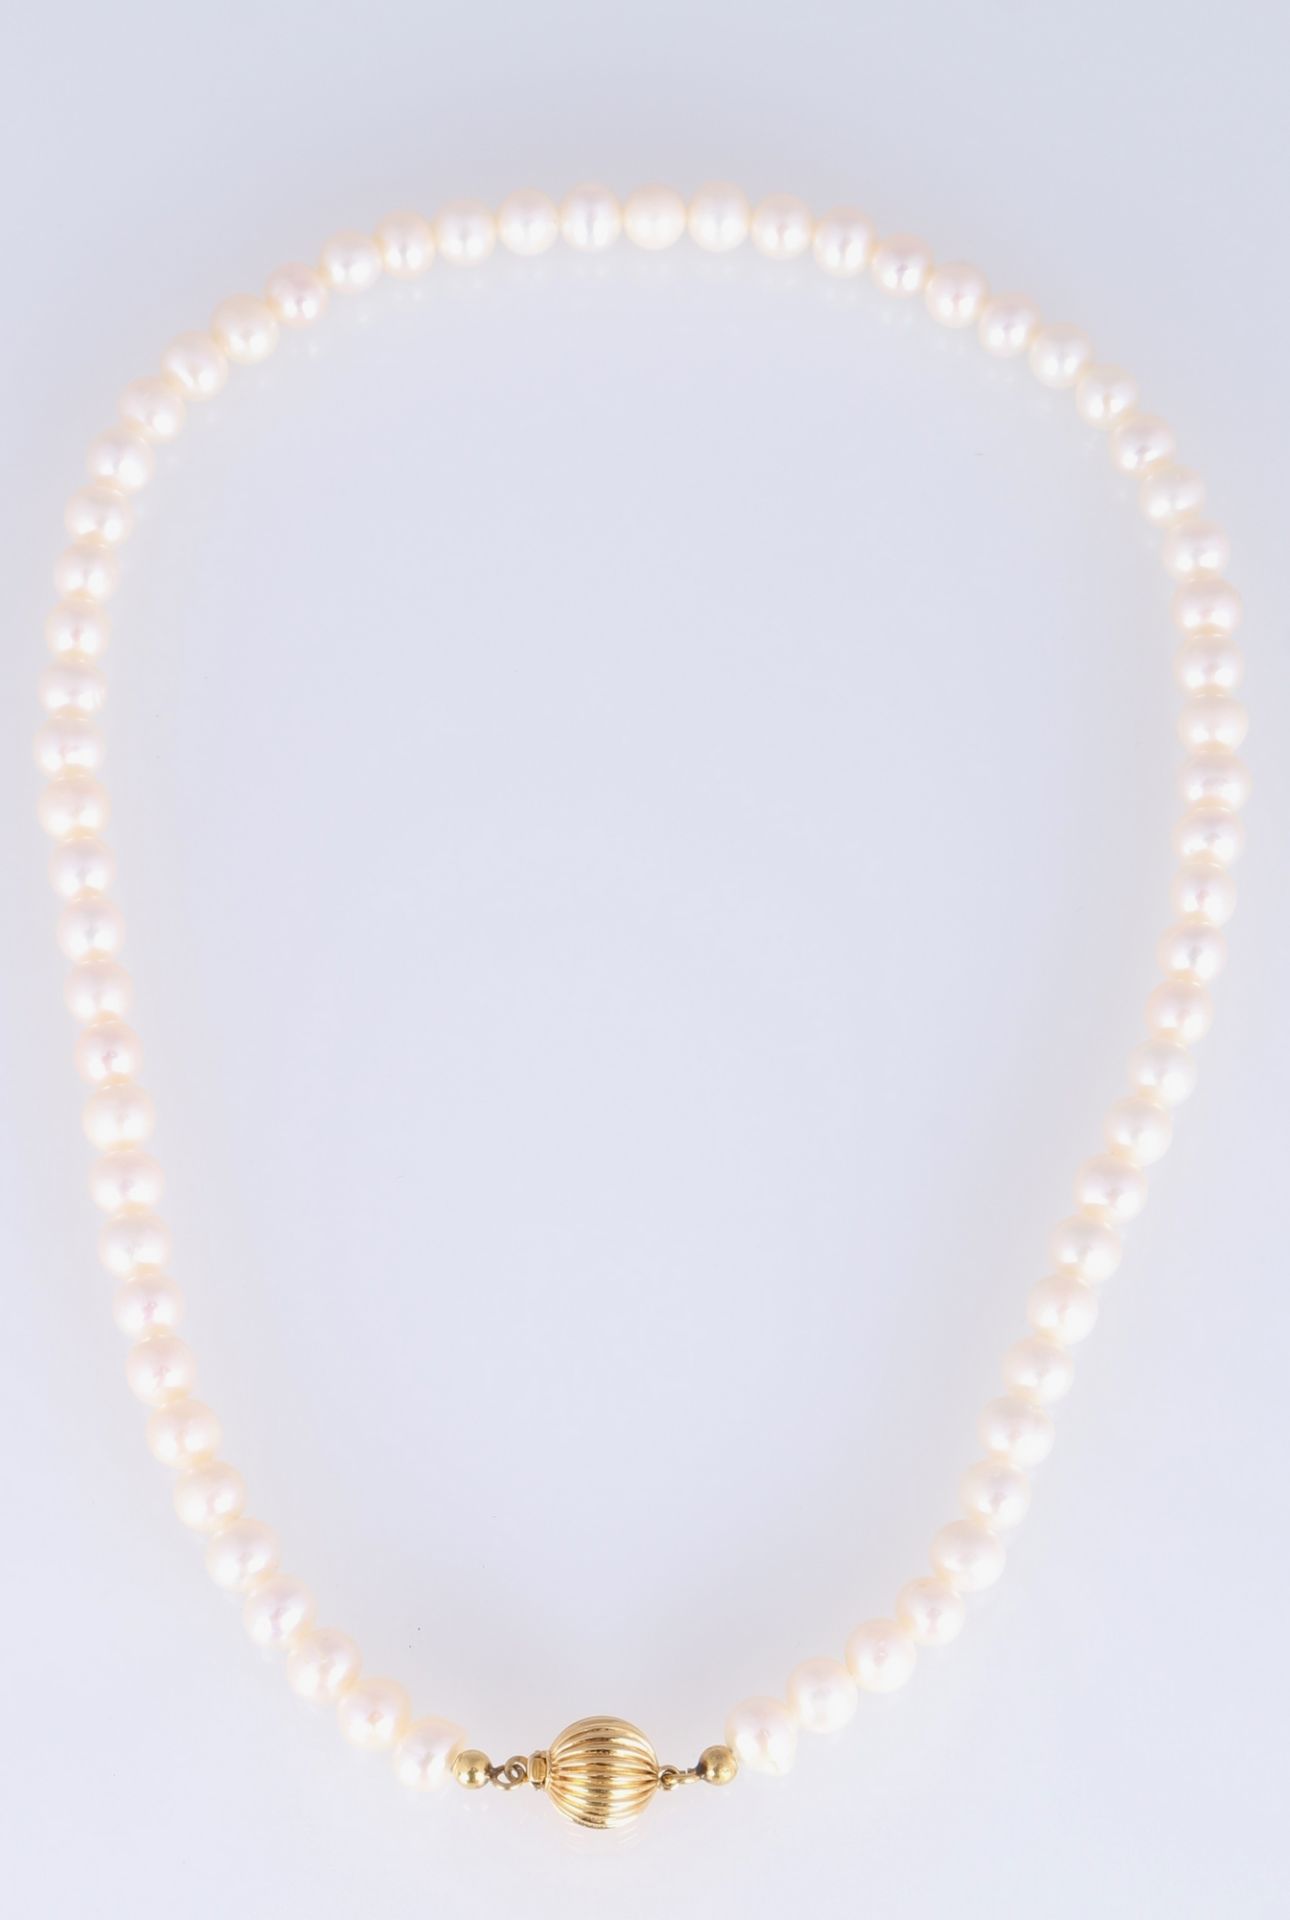 3 Perlenketten mit 375/585 Gold-Verschluss, pearl necklace with gold locks, - Image 3 of 5